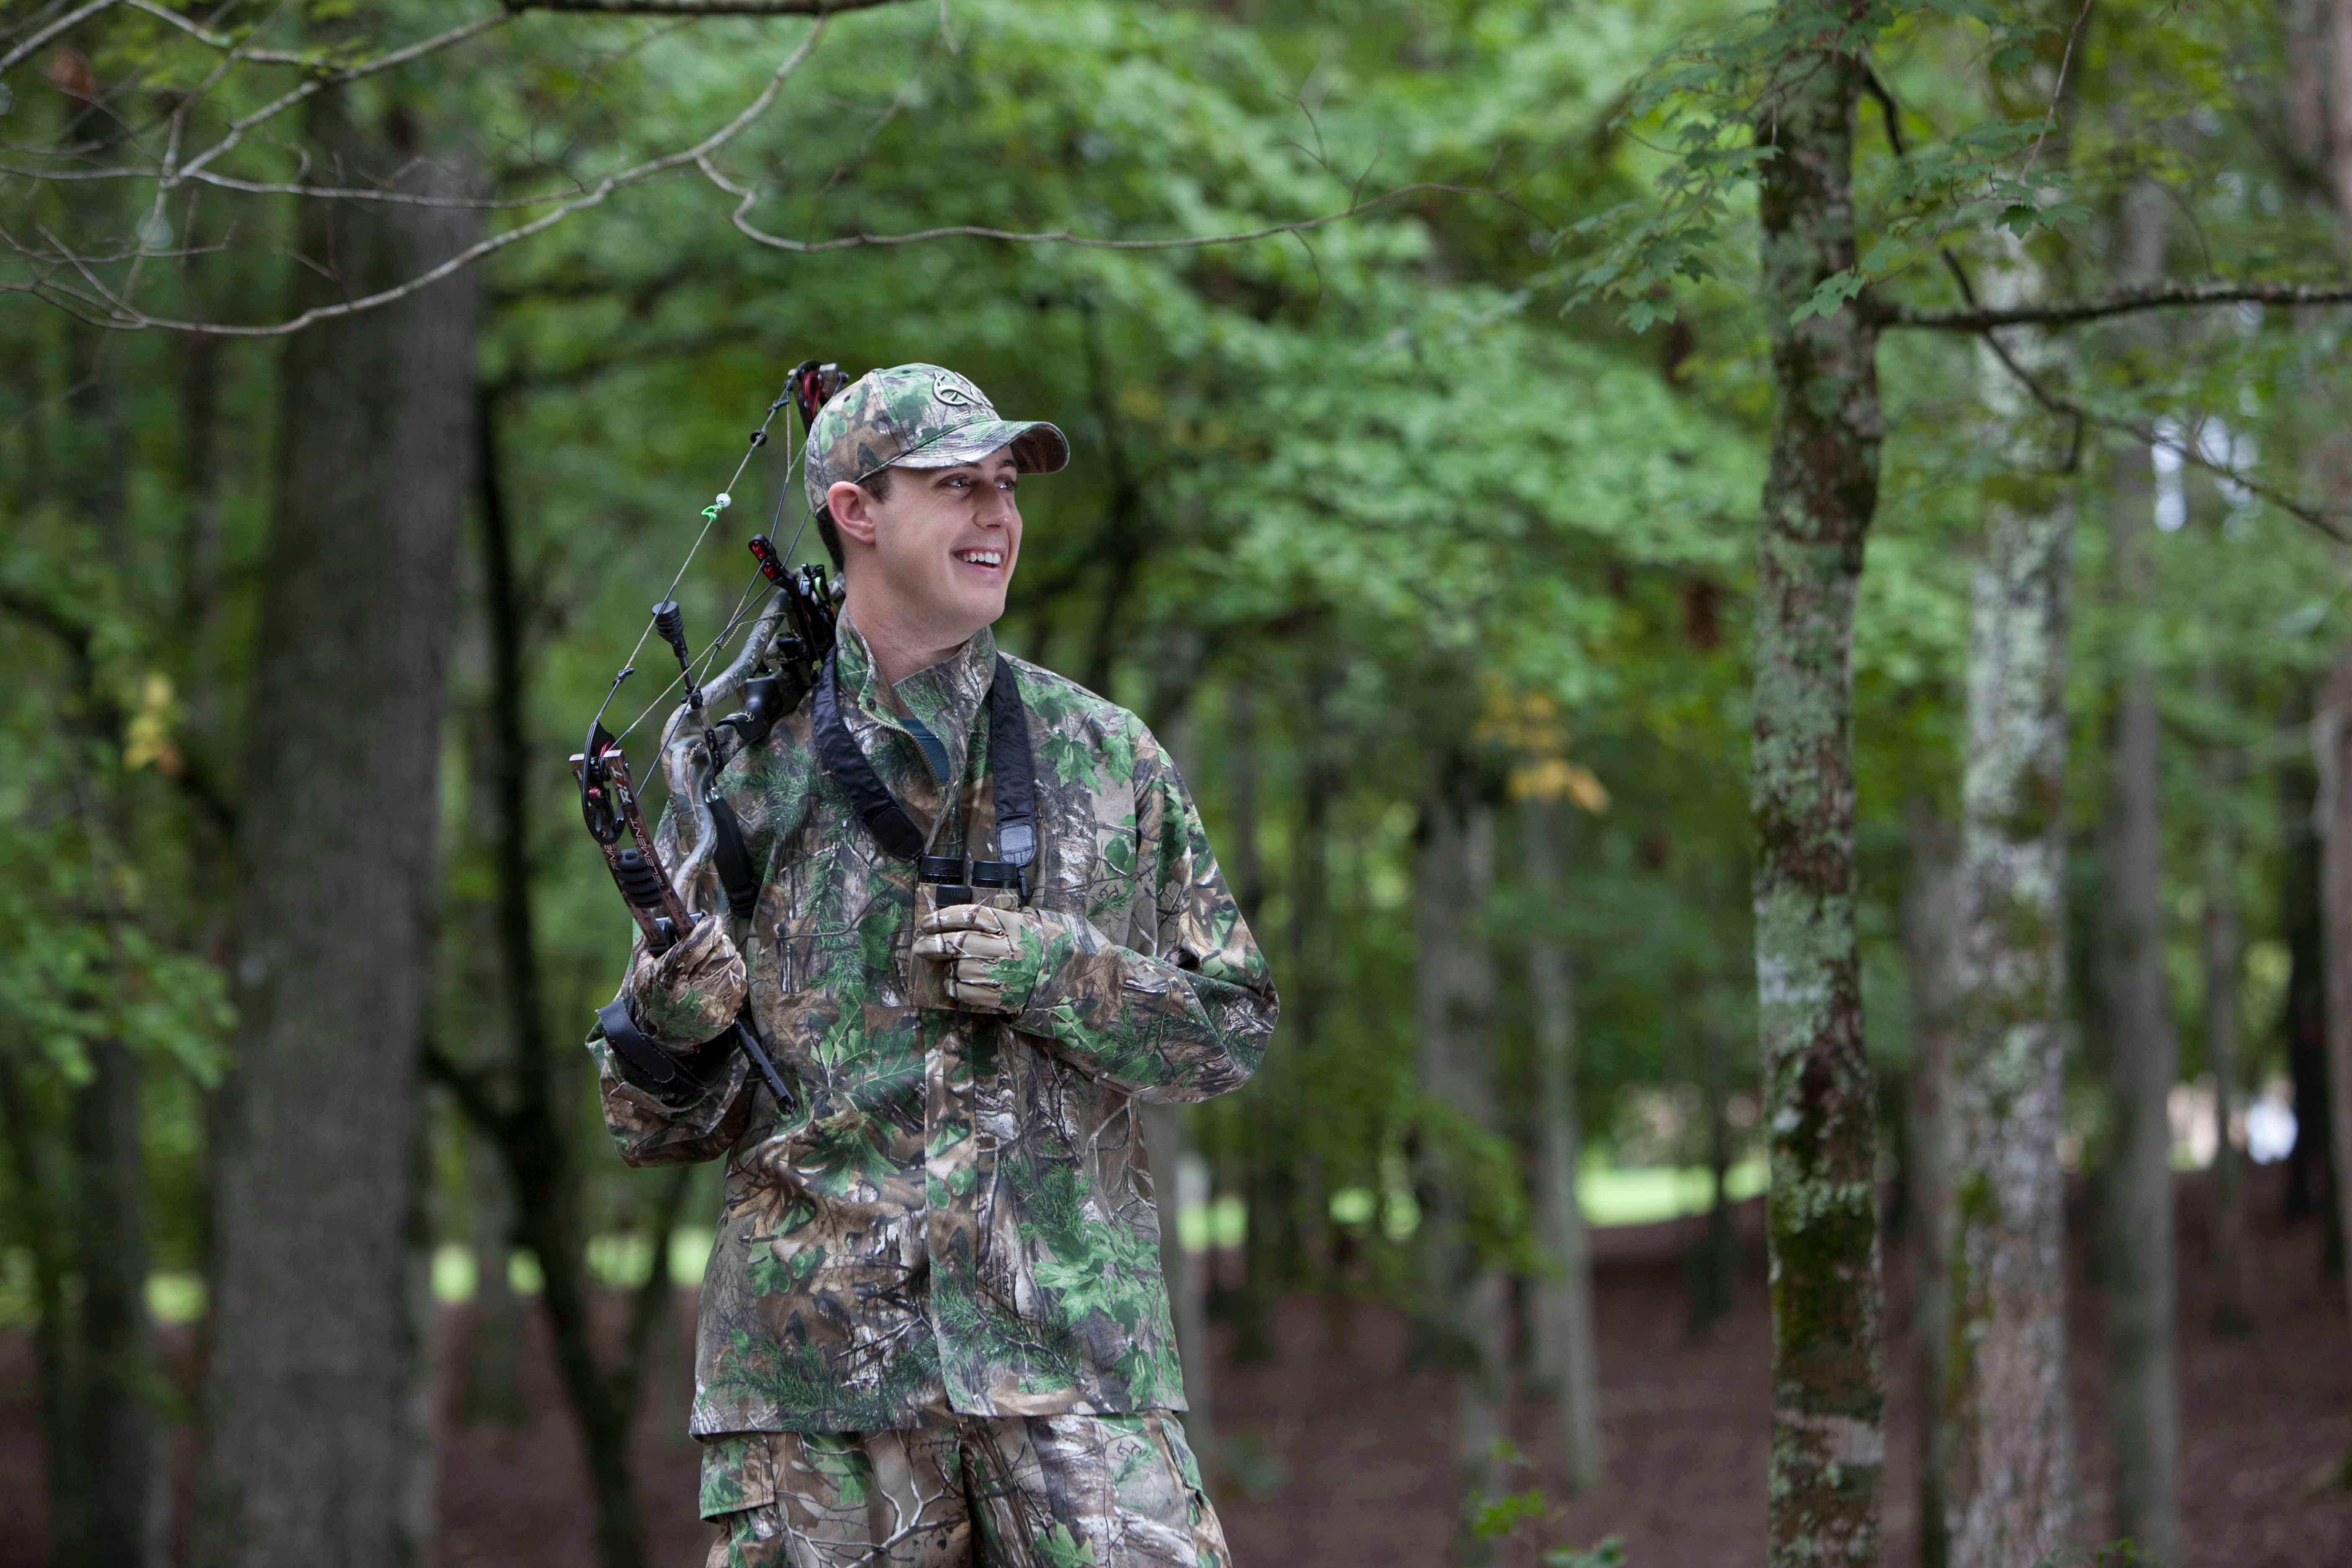 Tyler Jordan hunting whitetails. (Photo courtesy of Tyler Jordan)